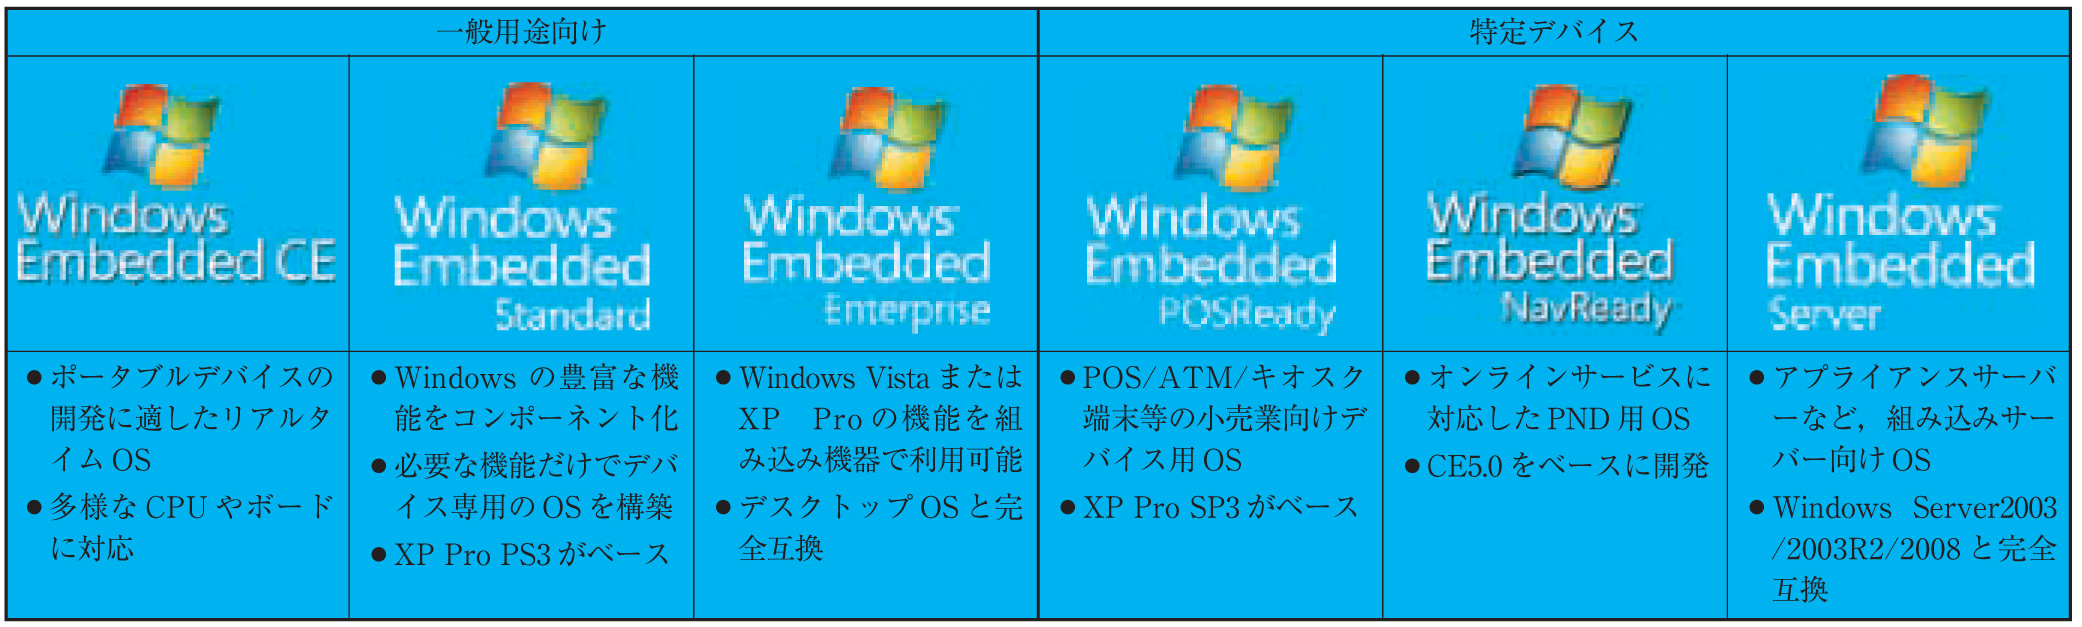 表 1 Windows Embedded 製品ファミリー